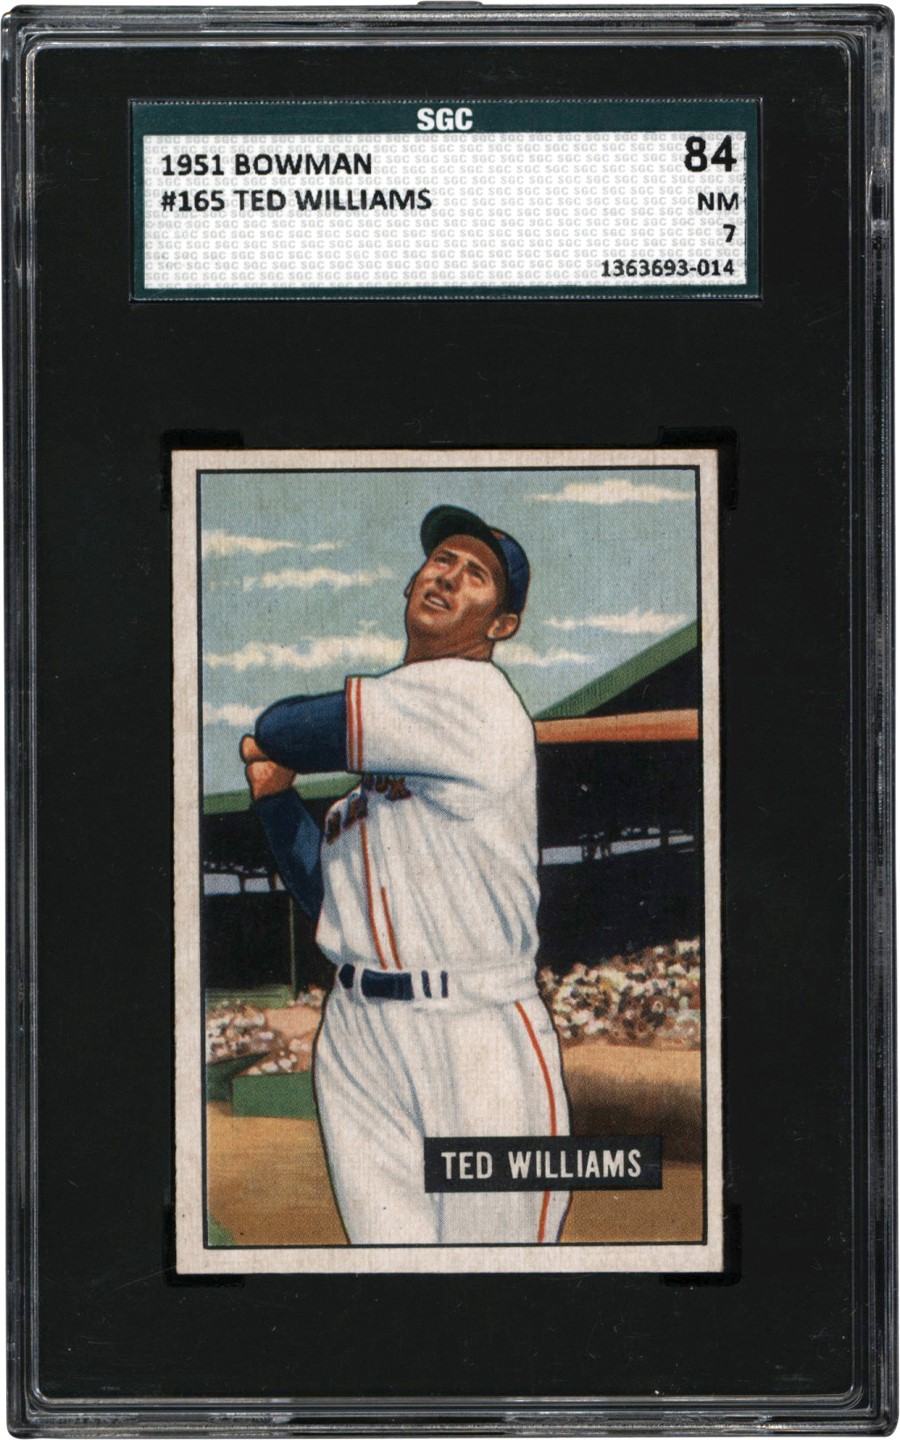 - 1951 Bowman Baseball #165 Ted Williams Card SGC NM 7